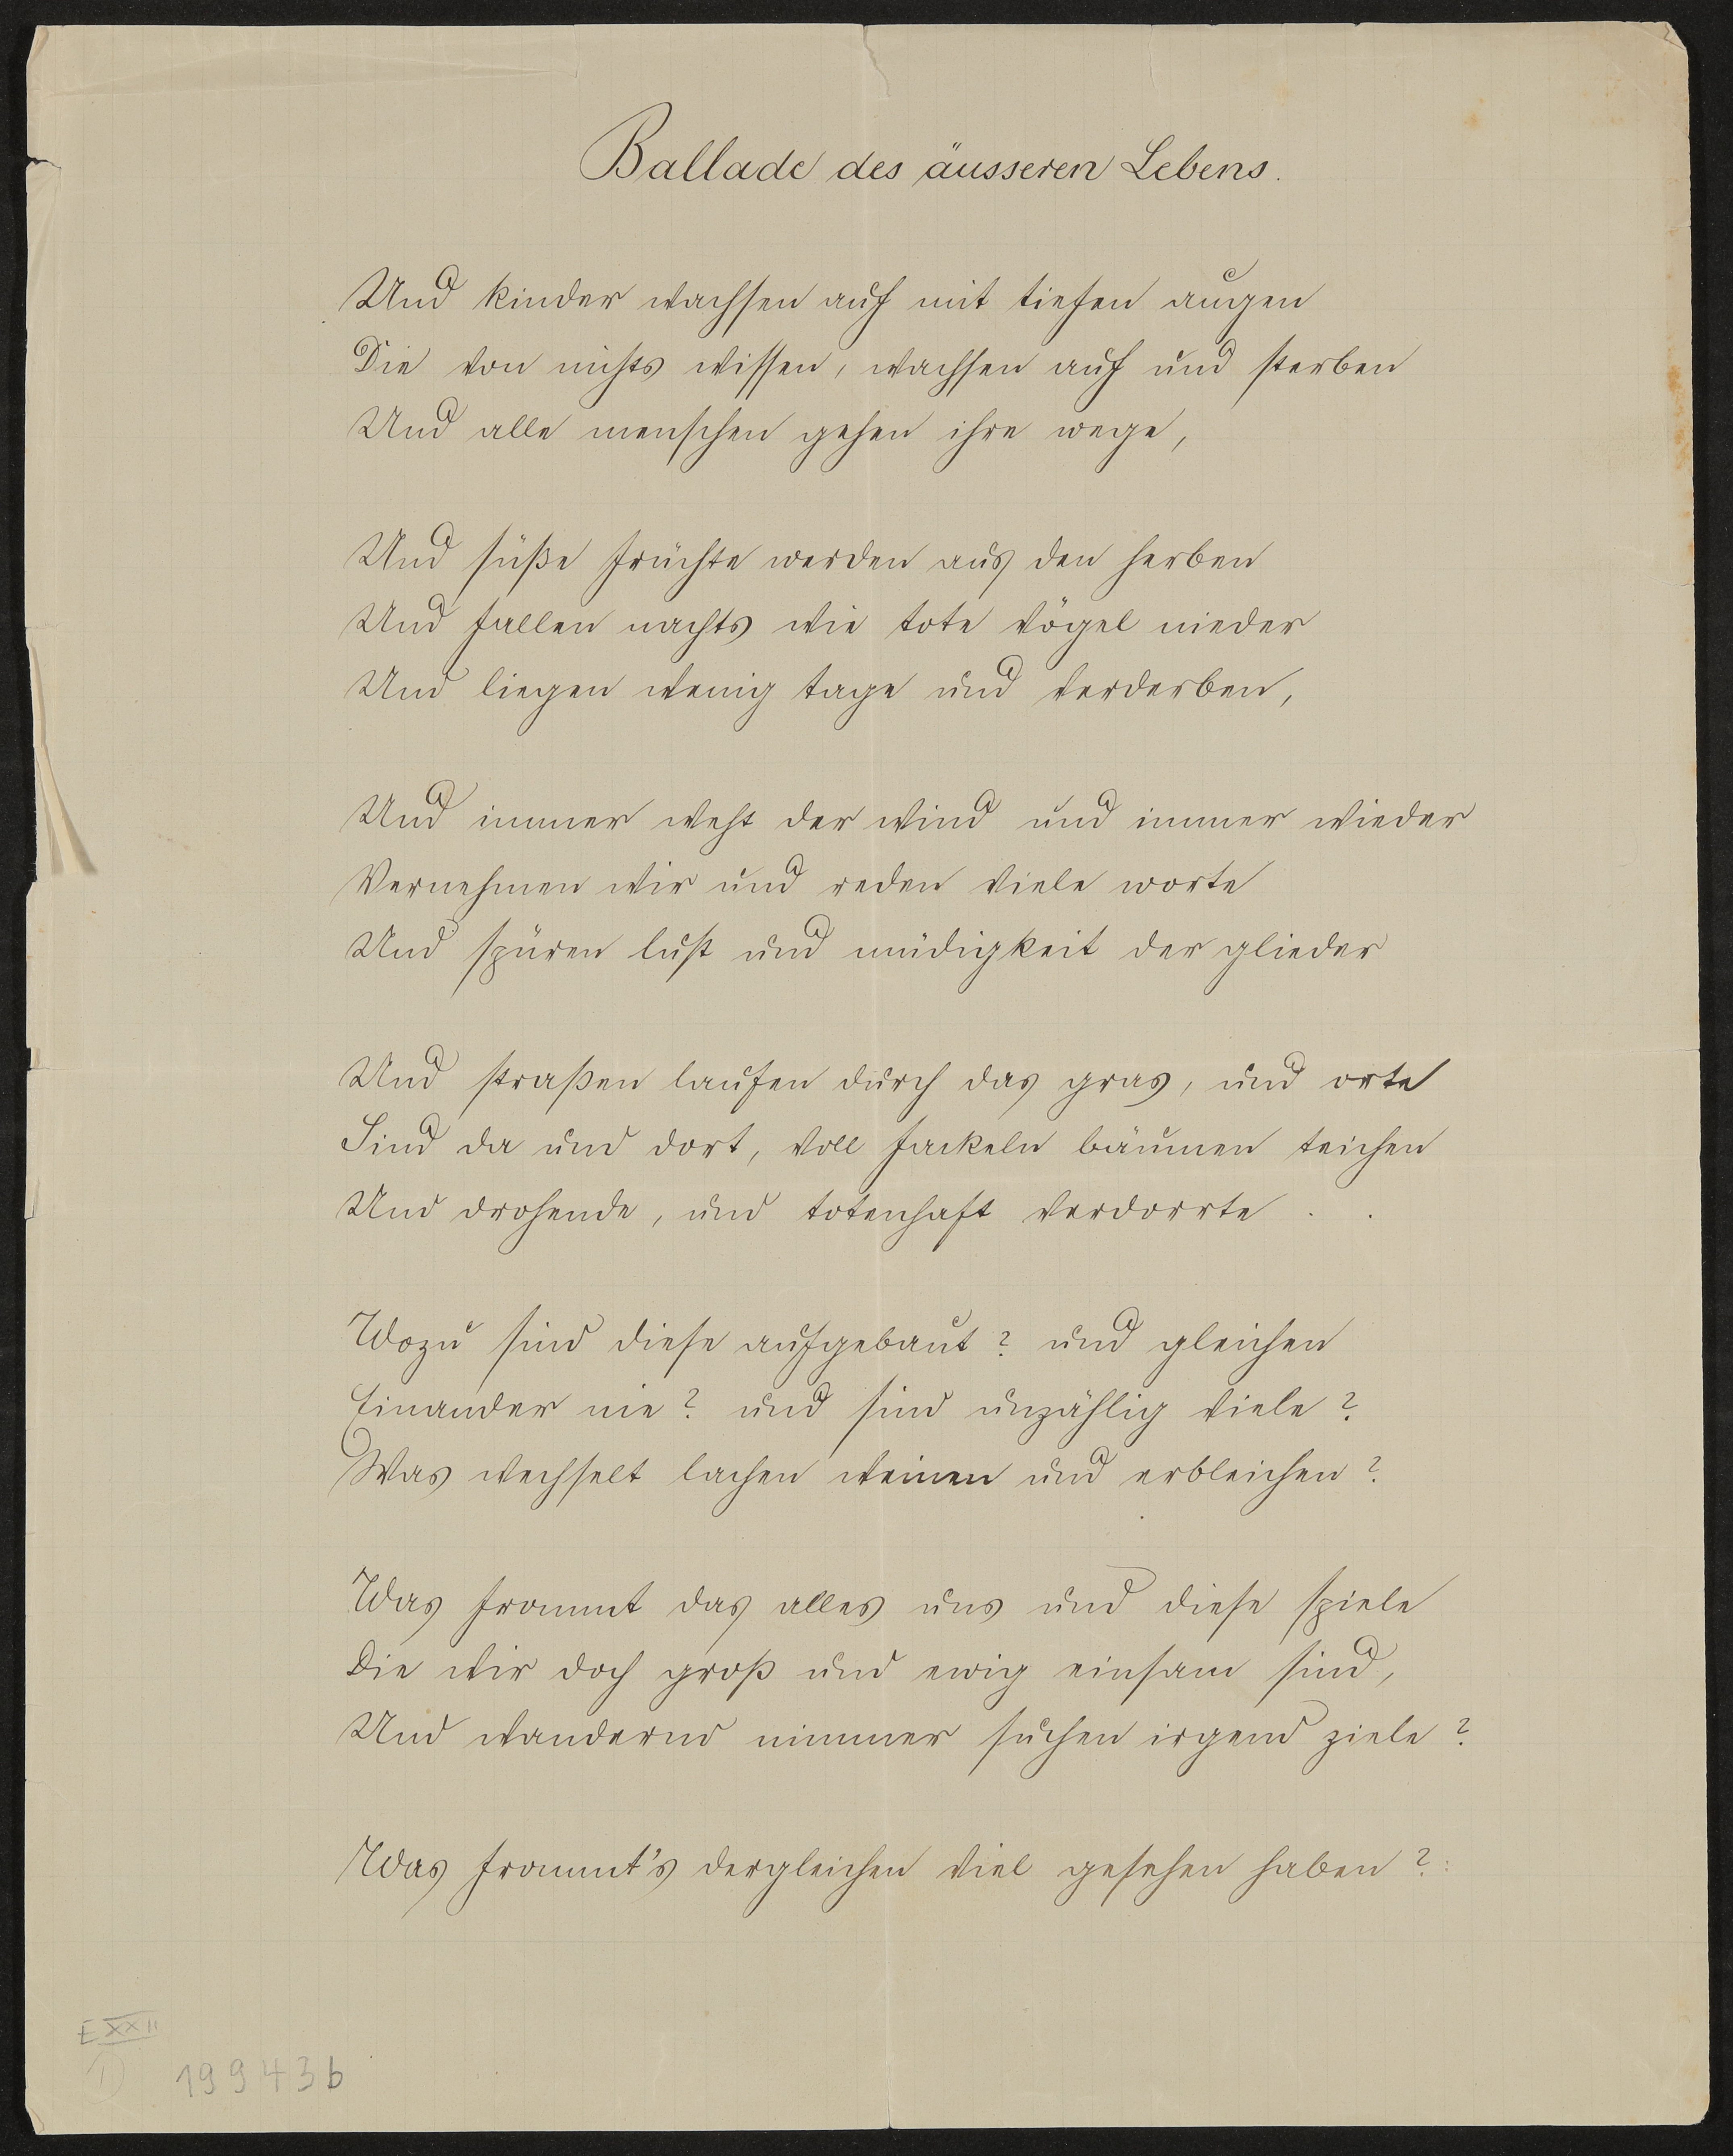 Gedicht: Ballade des äußeren Lebens (Freies Deutsches Hochstift / Frankfurter Goethe-Museum Public Domain Mark)